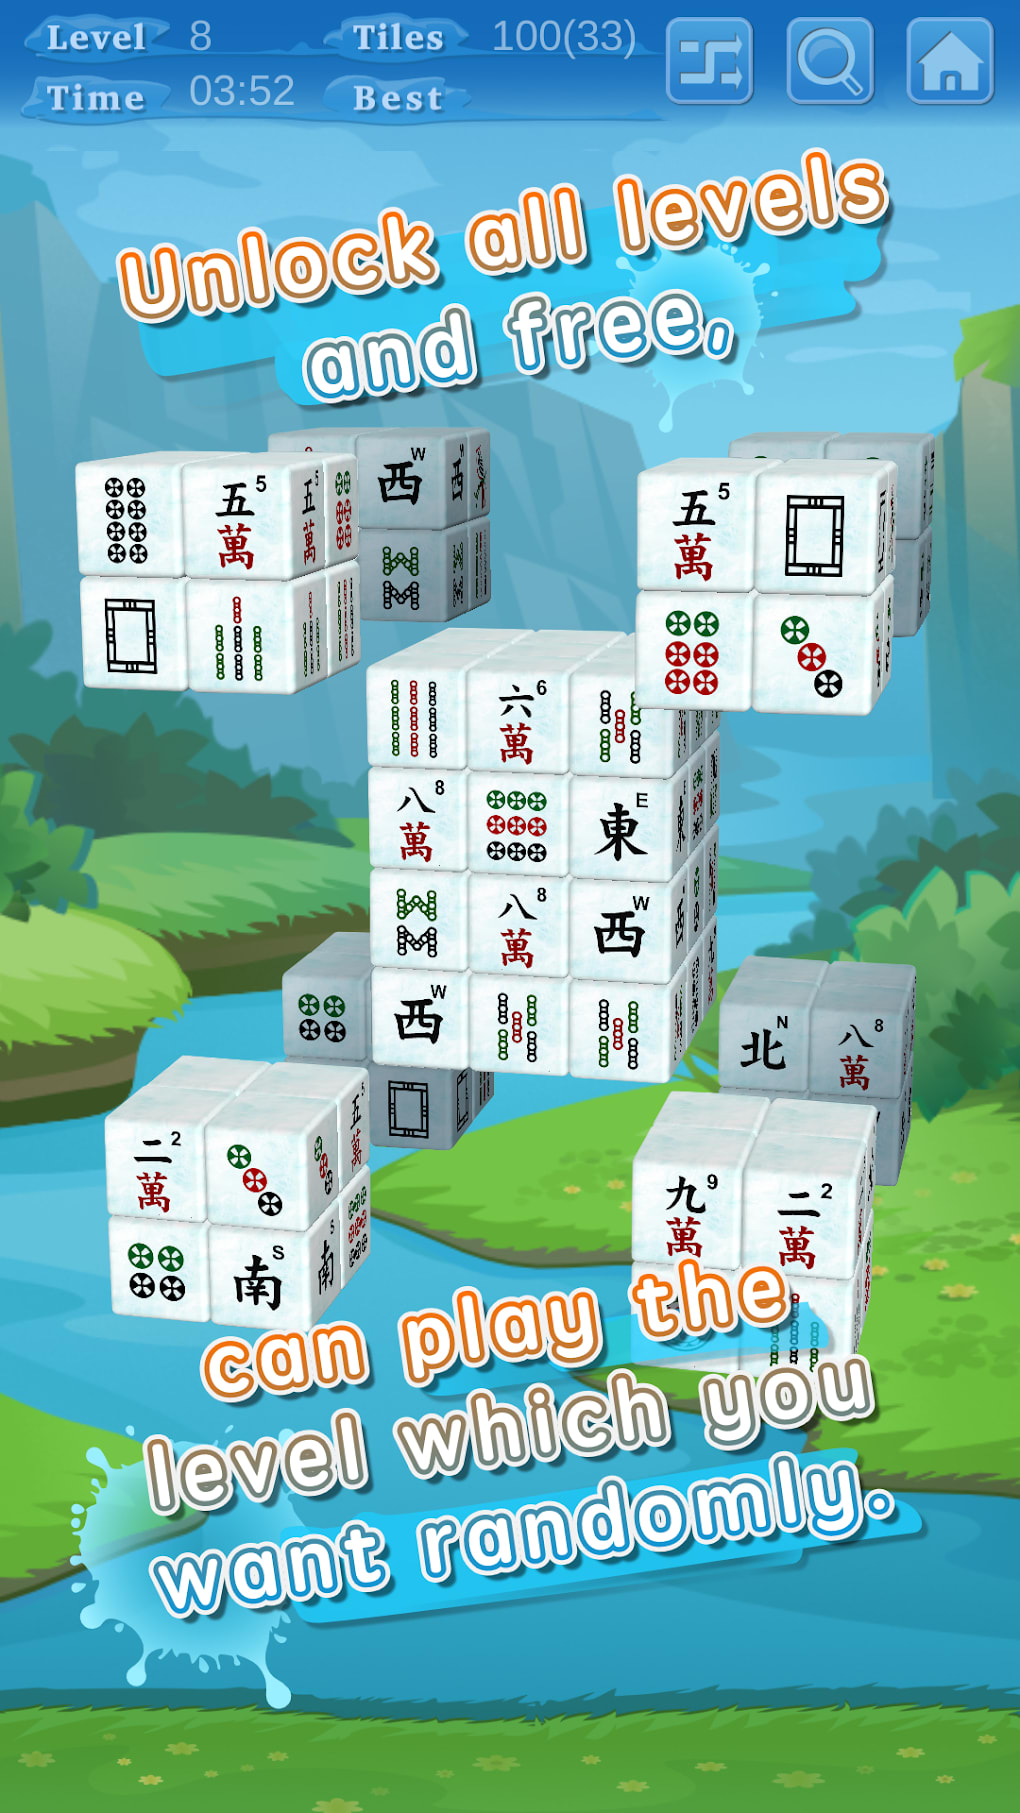 Jogo Mahjong 3D versão móvel andróide iOS apk baixar gratuitamente